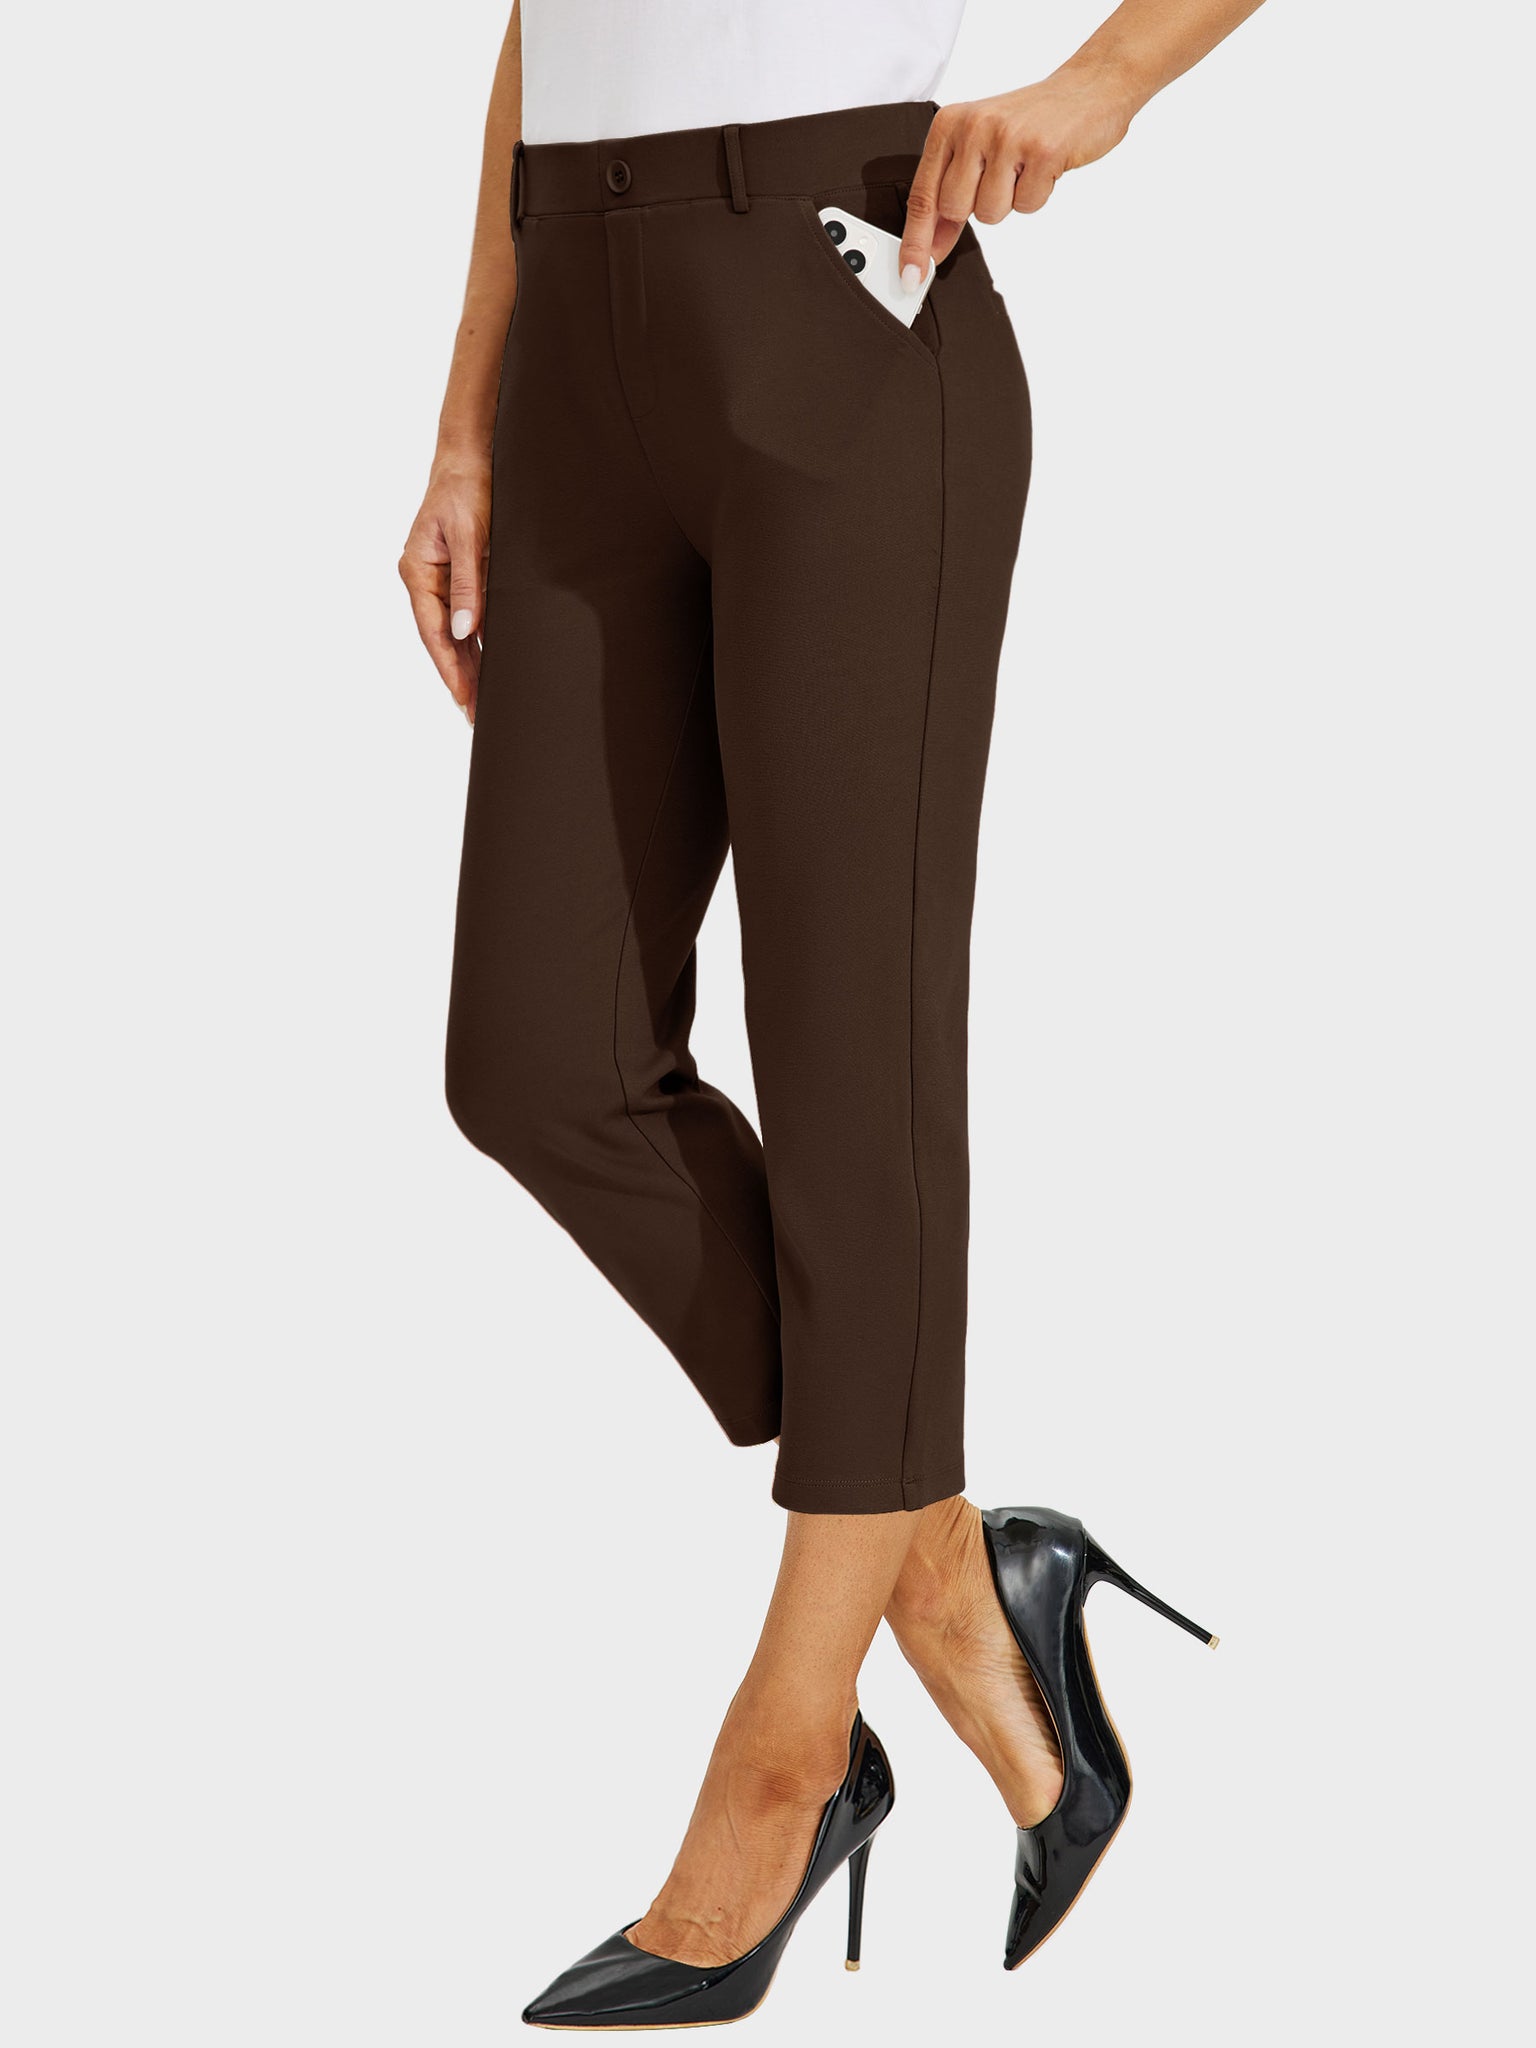 Women's Stretch Capri Yoga Dress Pants_Brown_model5